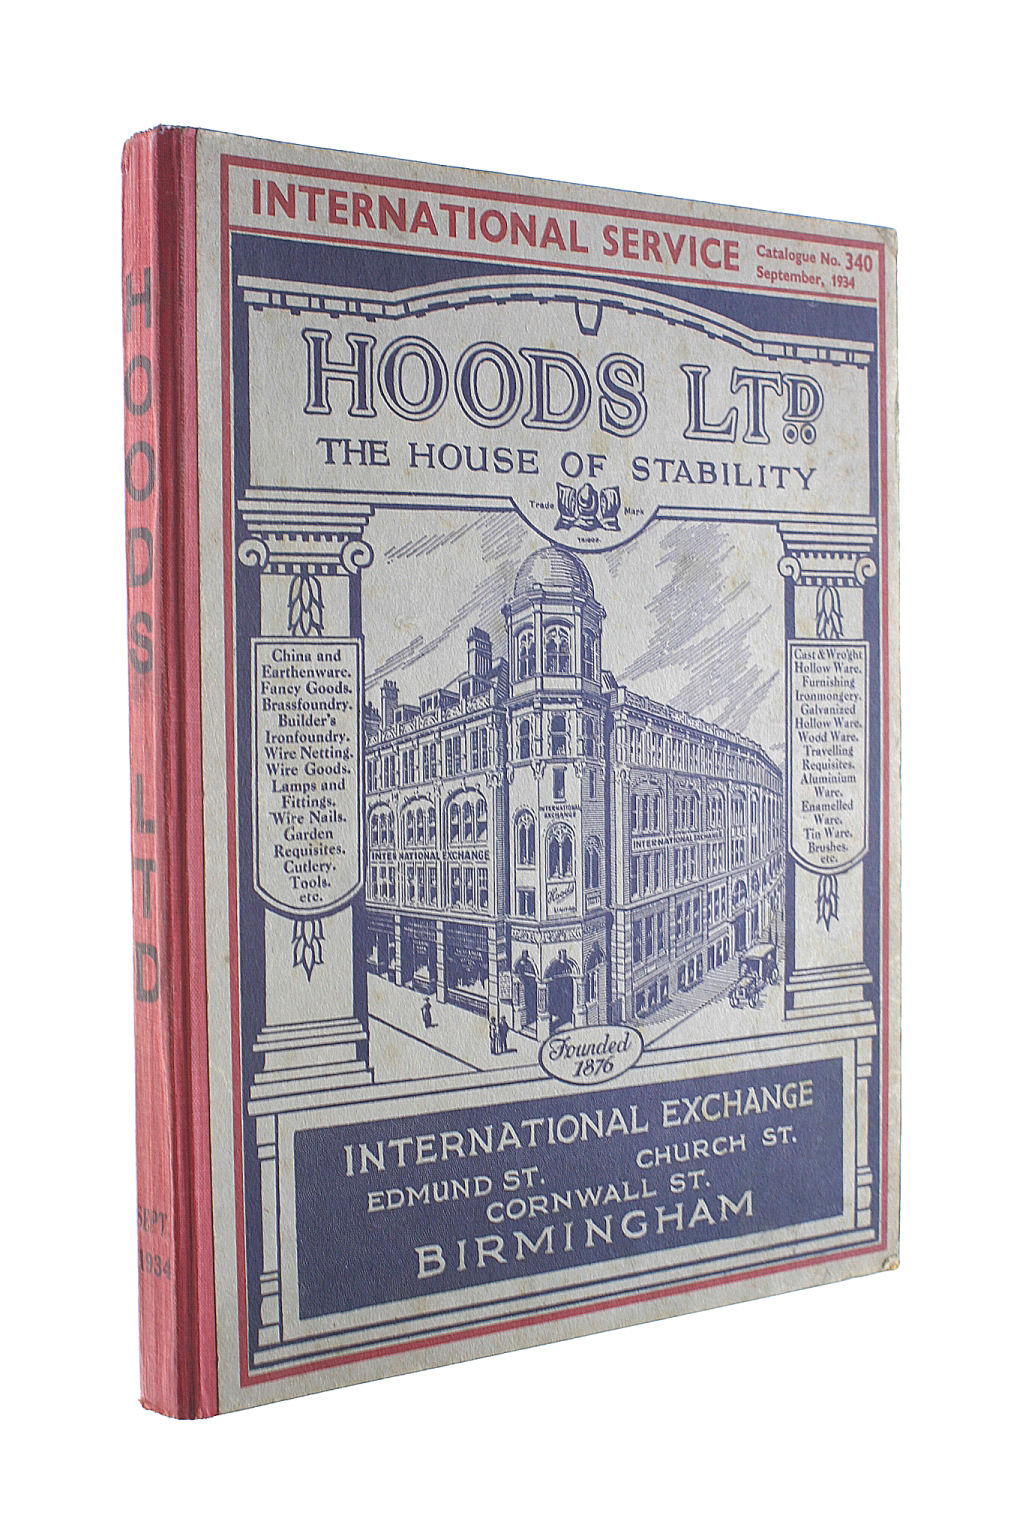 ANON - Hoods Ltd. Catalogue No. 340 September 1934